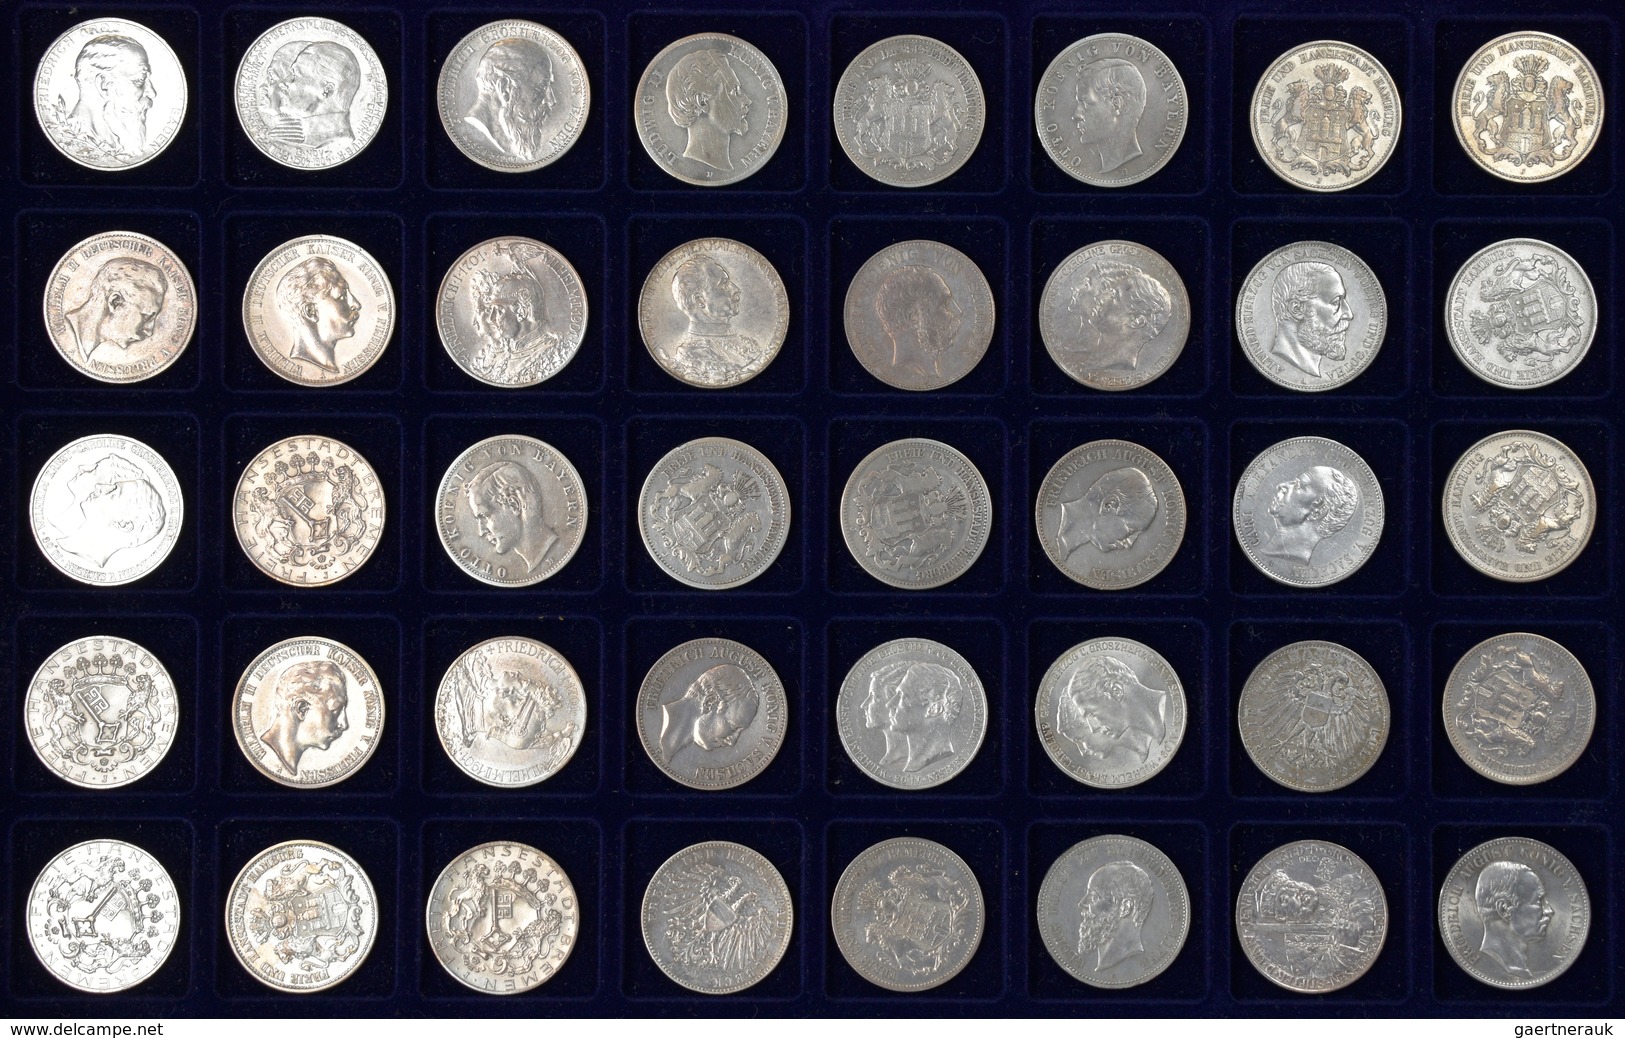 Umlaufmünzen 2 Mark bis 5 Mark: Eine auf zwei Münzkoffer verteilte bemerkenswerte Sammlung von insge